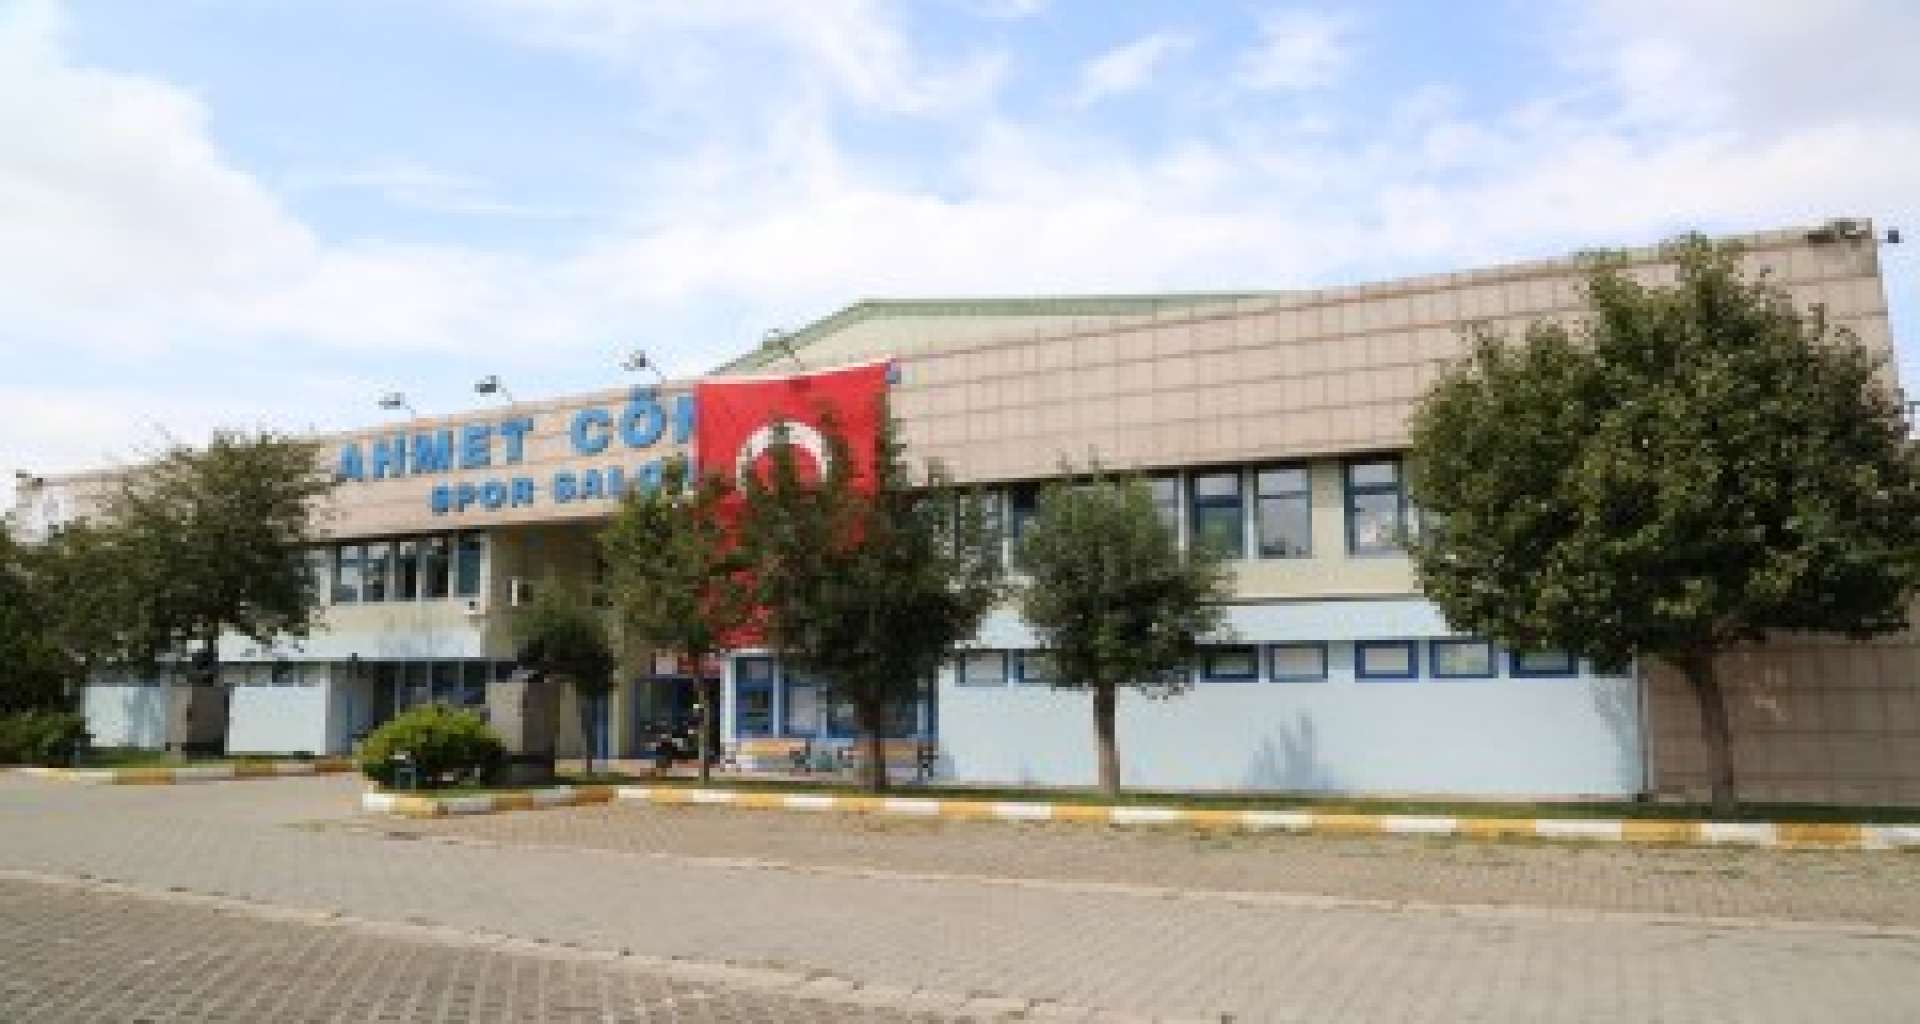 Ahmet Cömert Spor Salonu